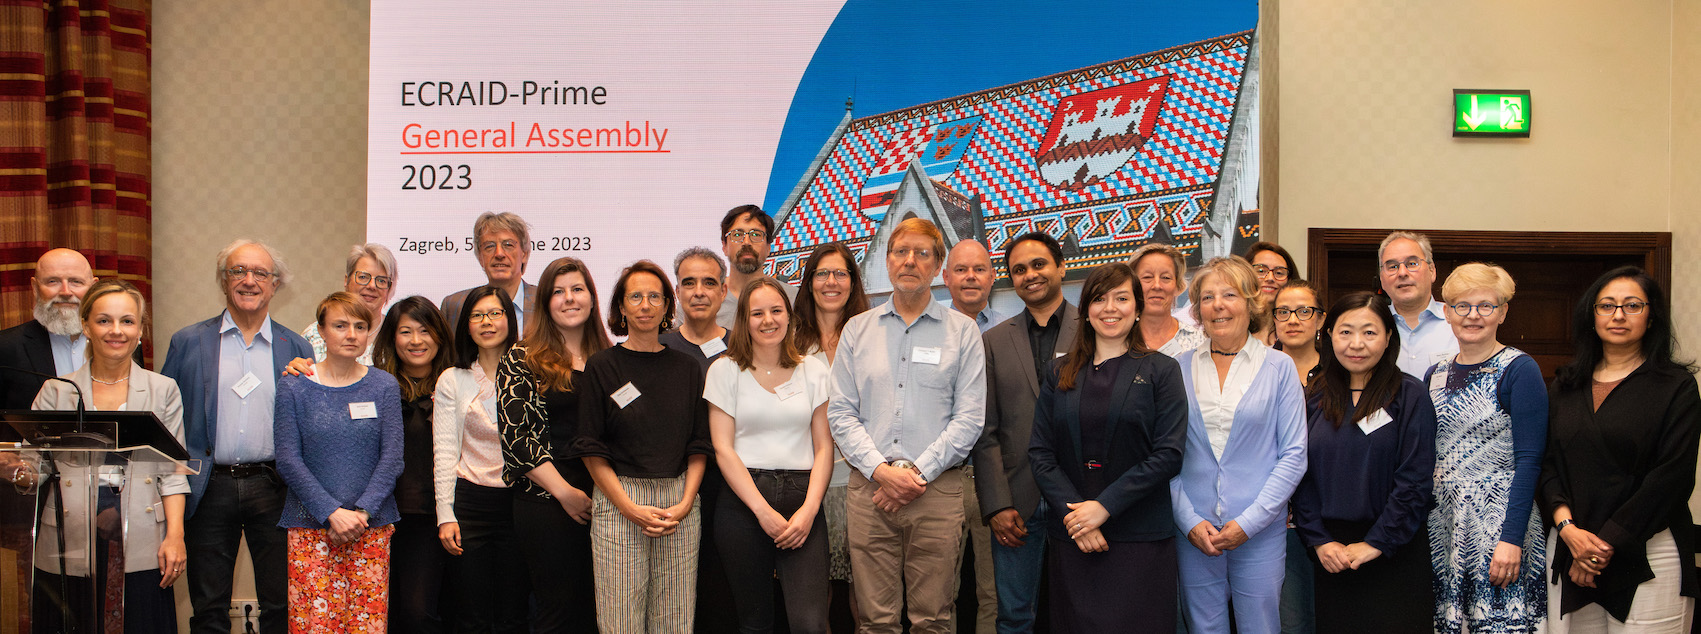 The ECRAID-Prime consortium members at the GA 2023